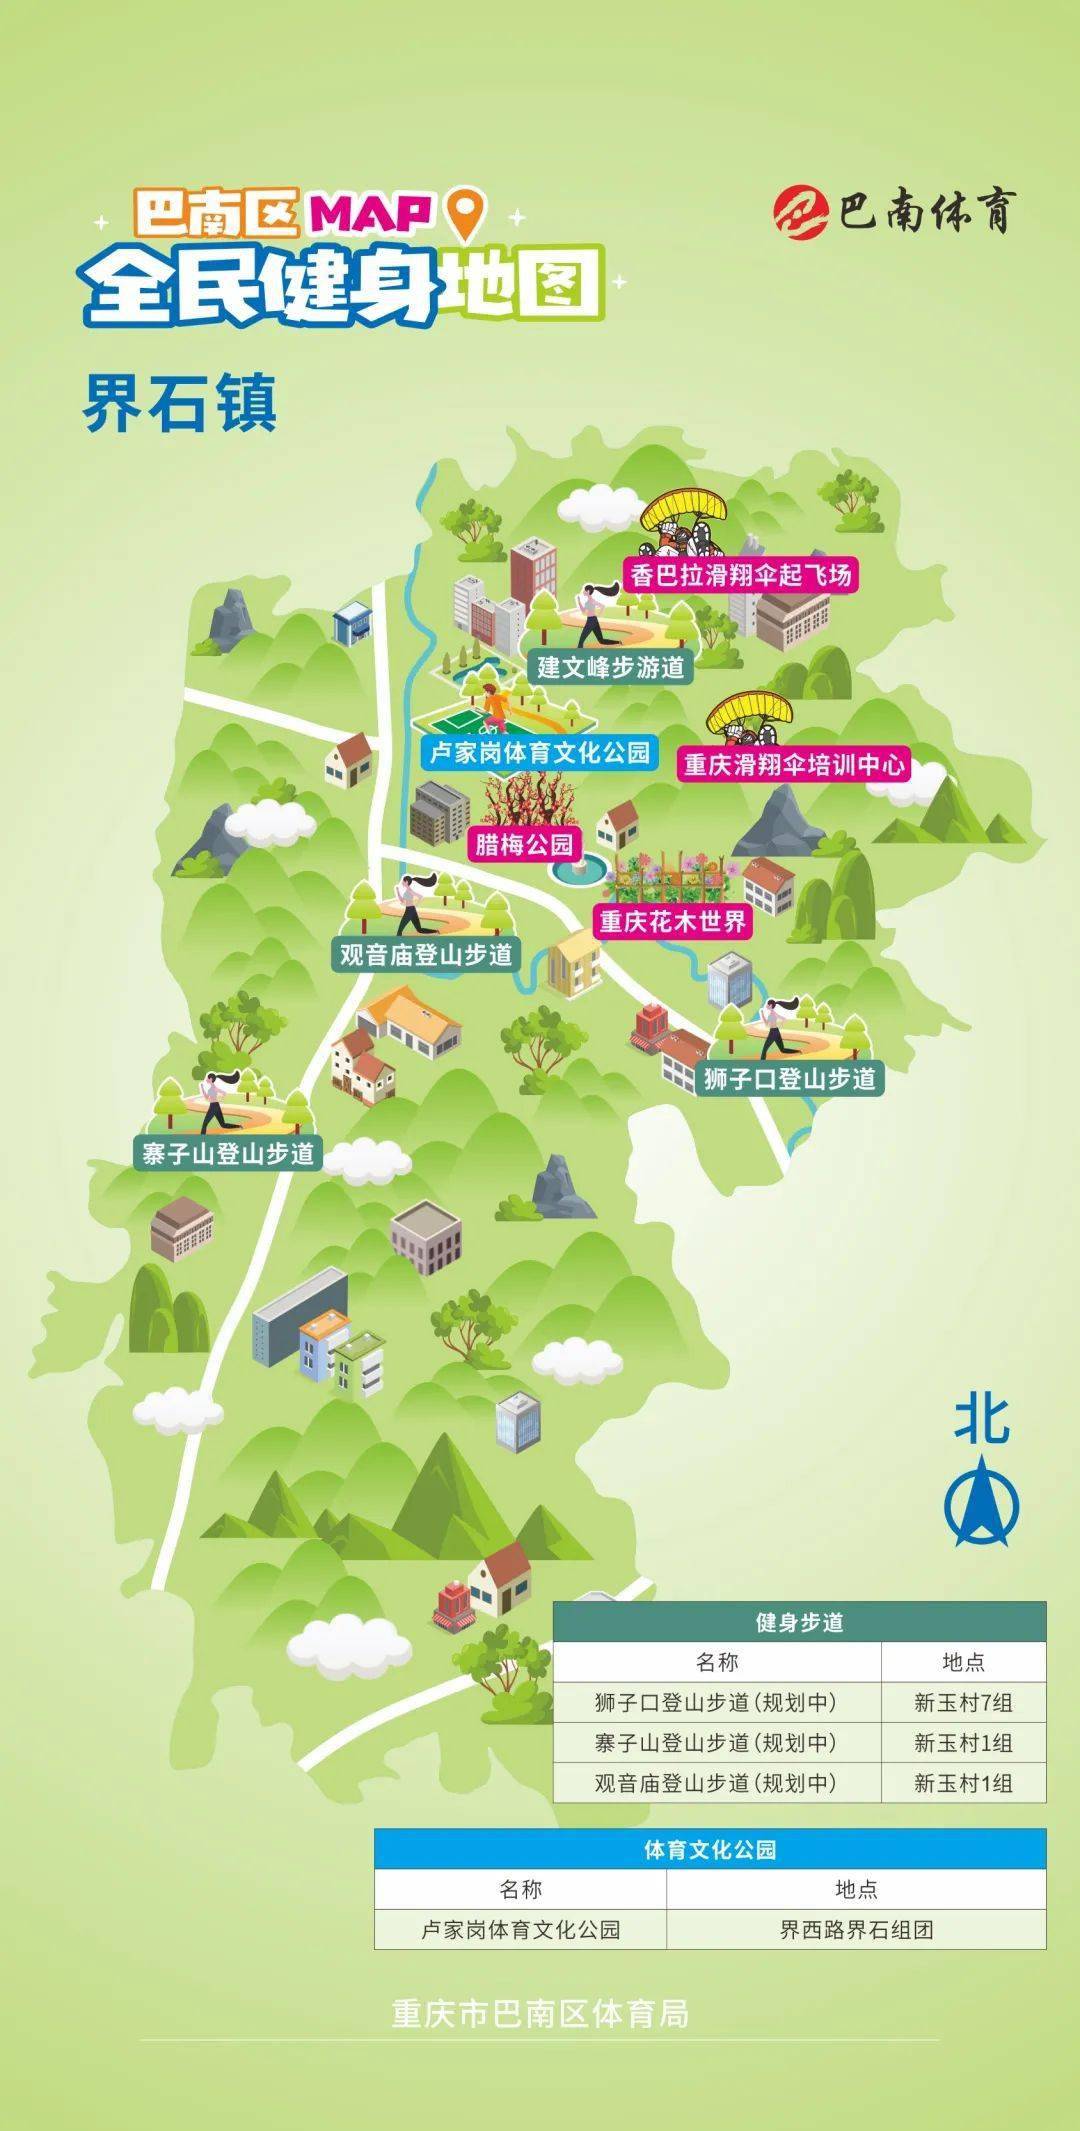 文登界石镇地图图片